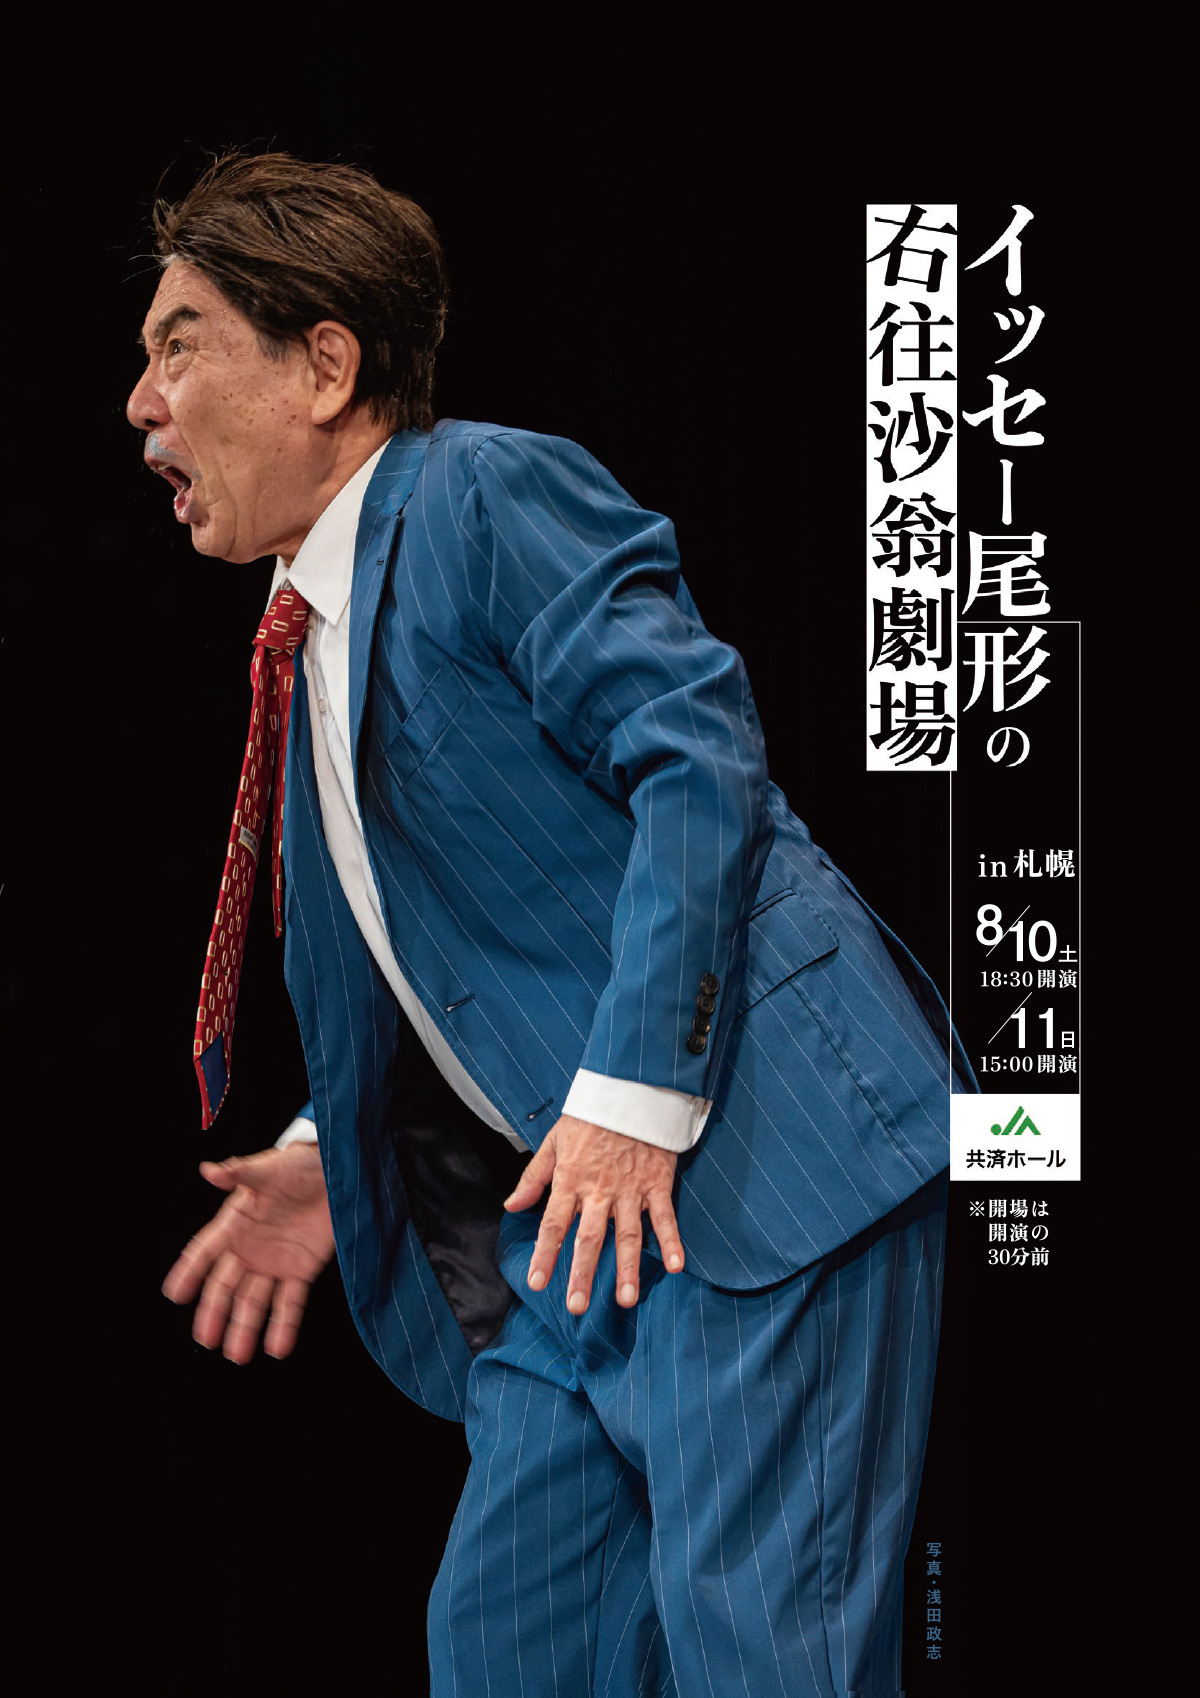 『イッセー尾形の右往沙翁劇場』in 札幌